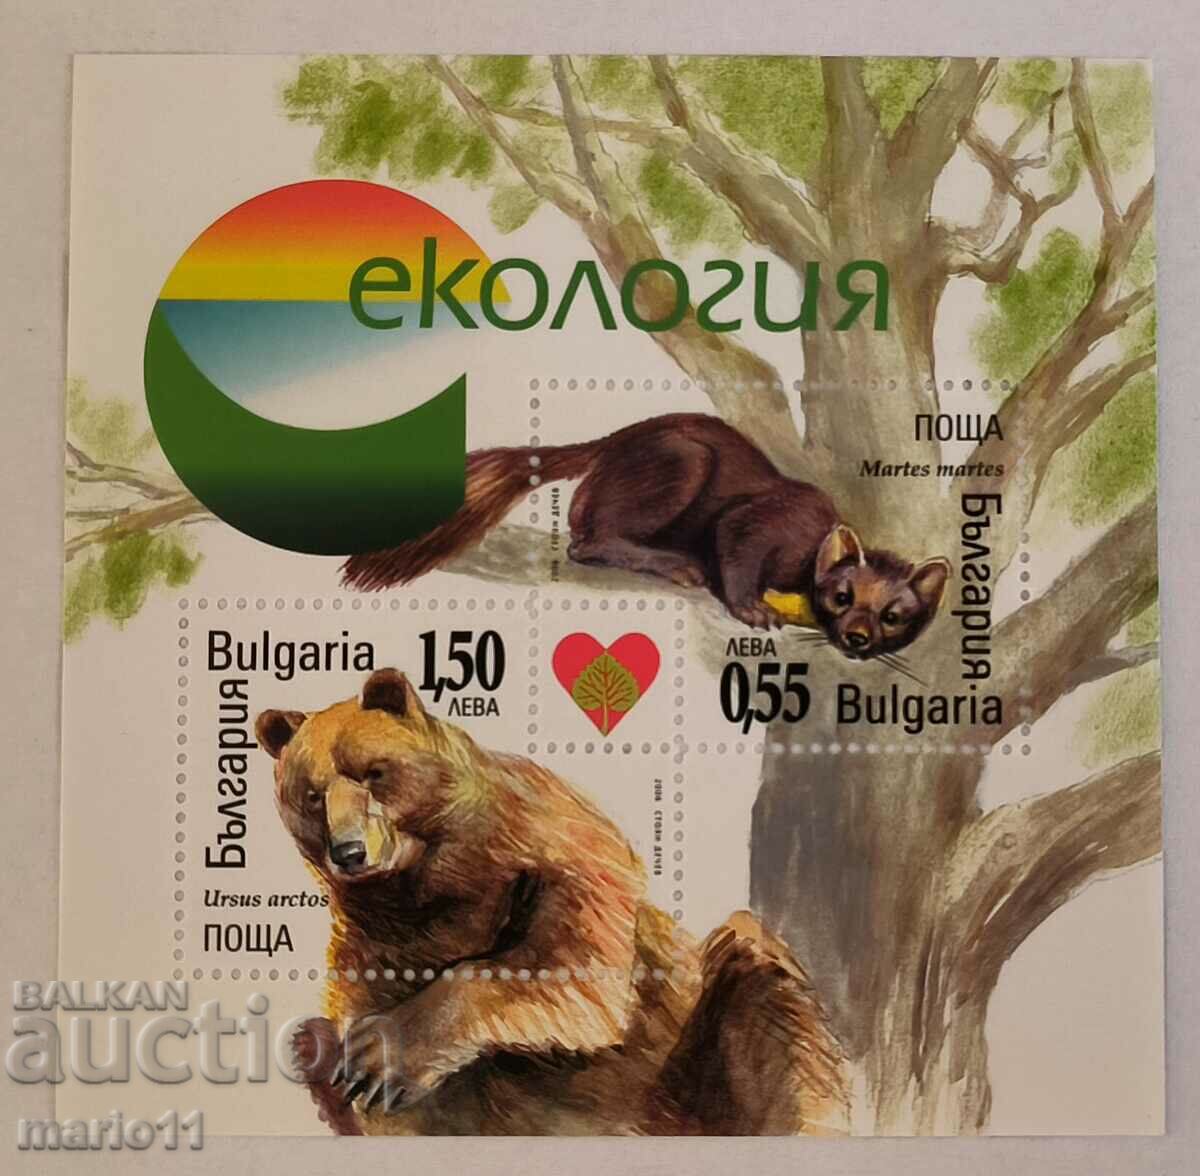 Βουλγαρία - 4727 - Οικολογία, μπλοκ